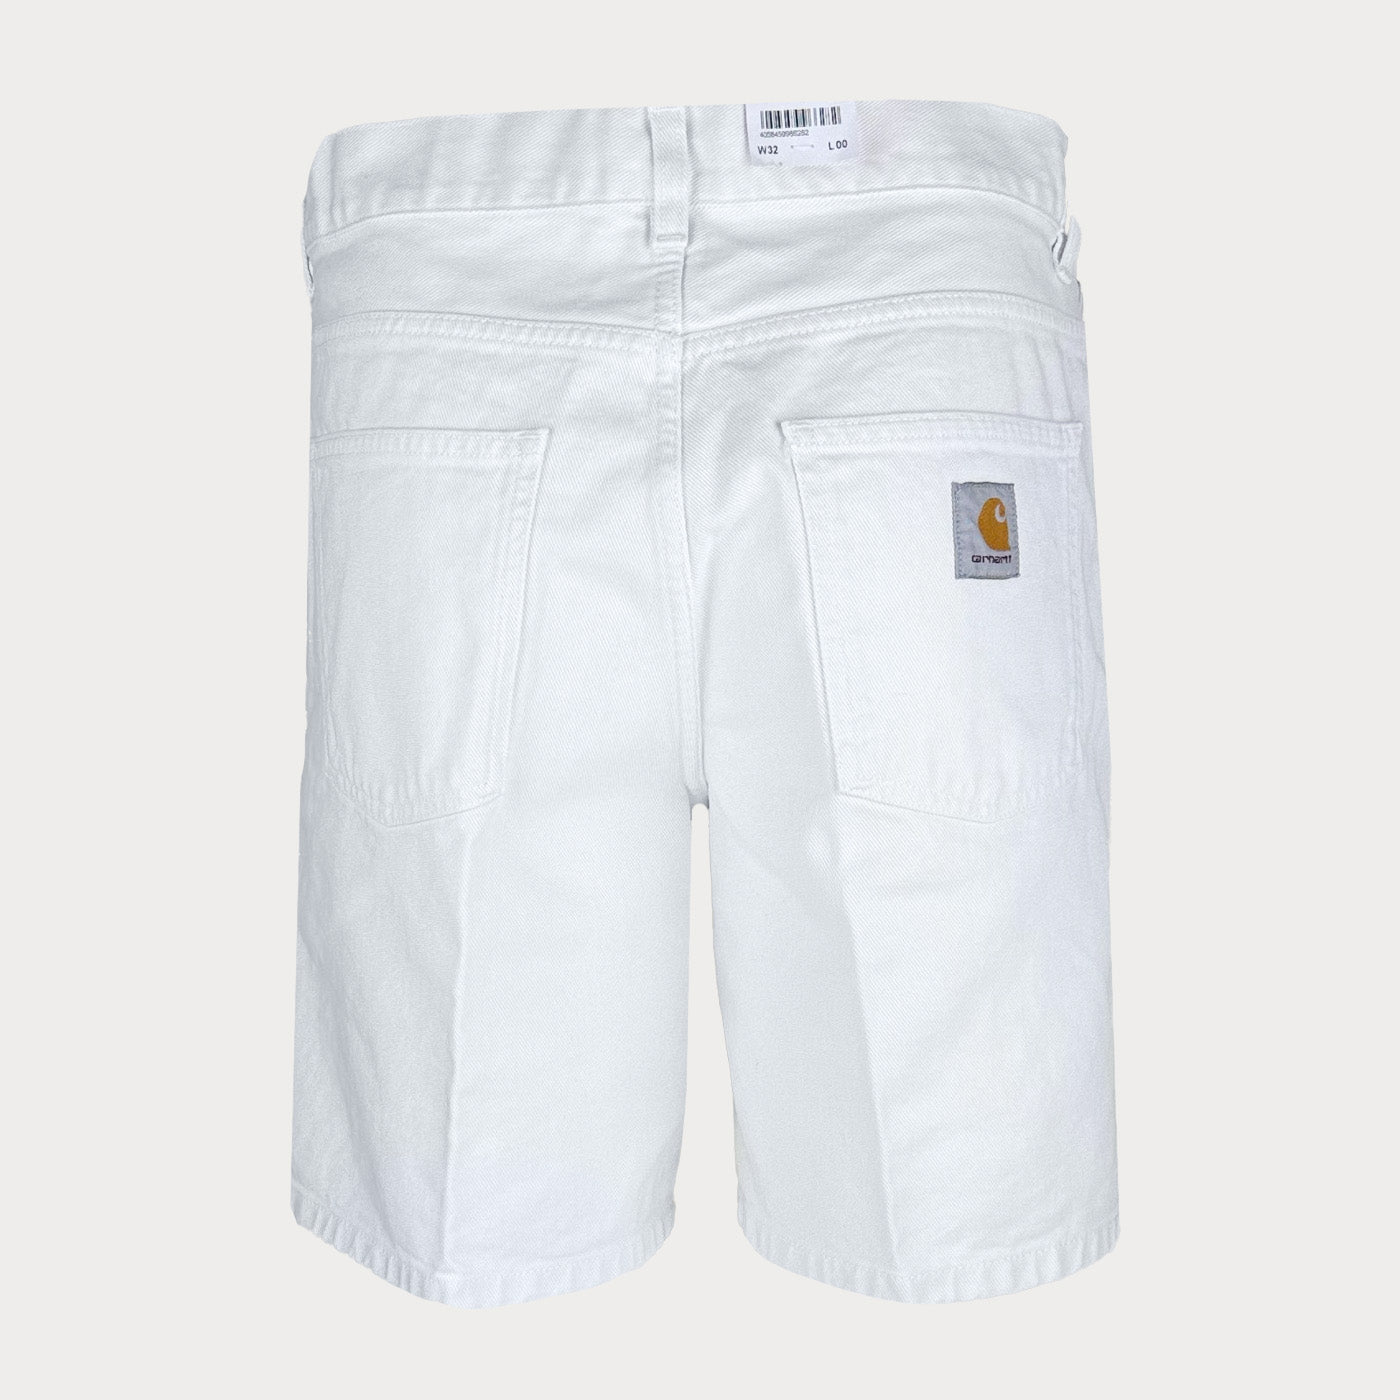 Мъжки бели къси панталони - 0